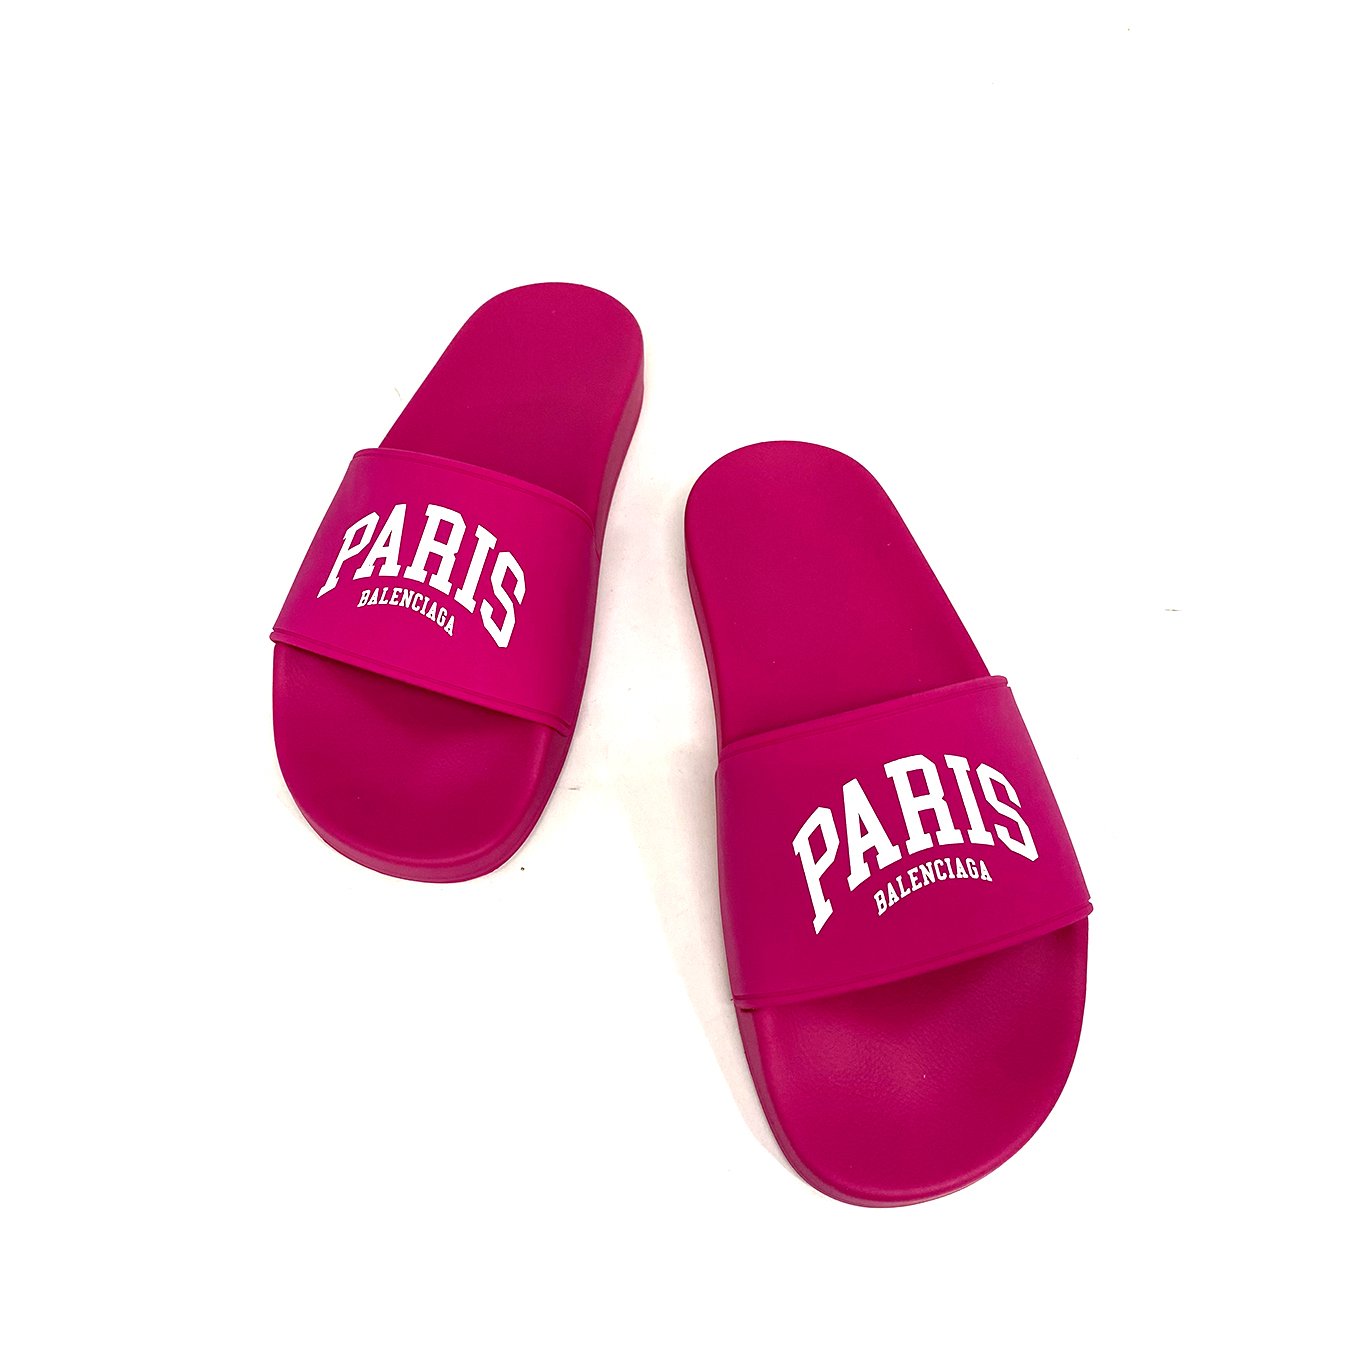 Balenciaga Pool Slide Cites "PARIS" In Fuchsia Size 39